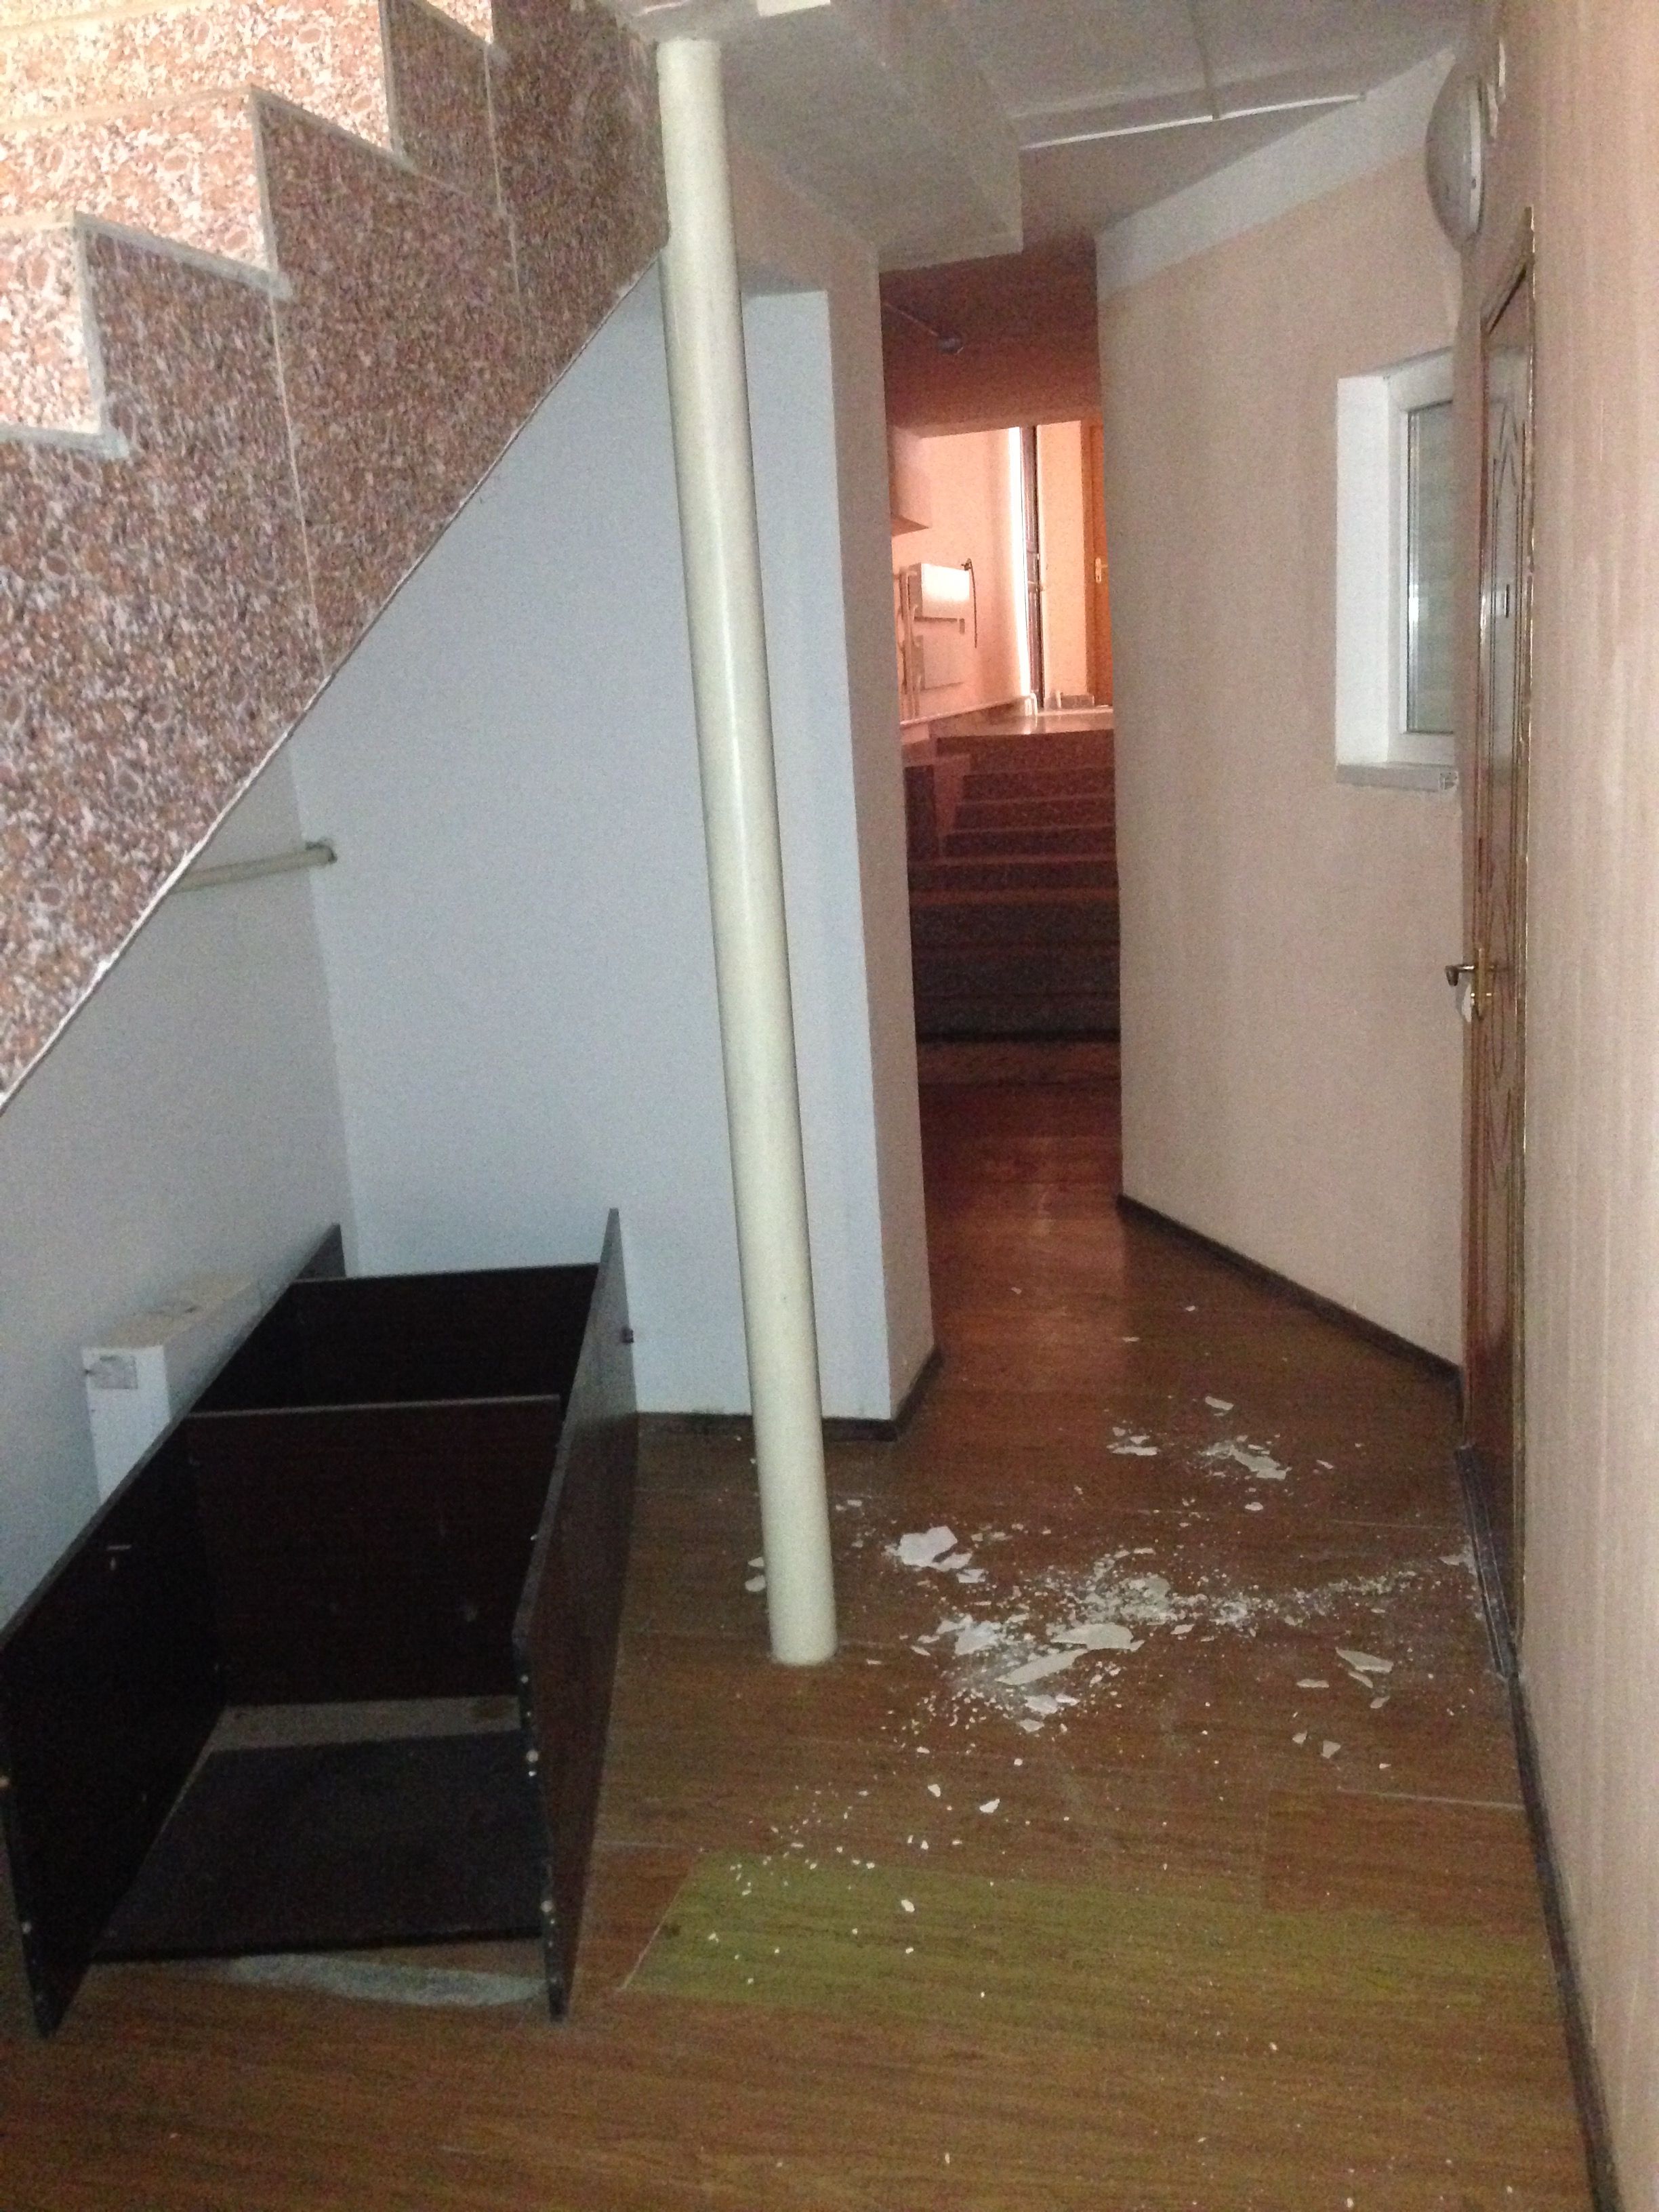 Aktau, my hotel basement